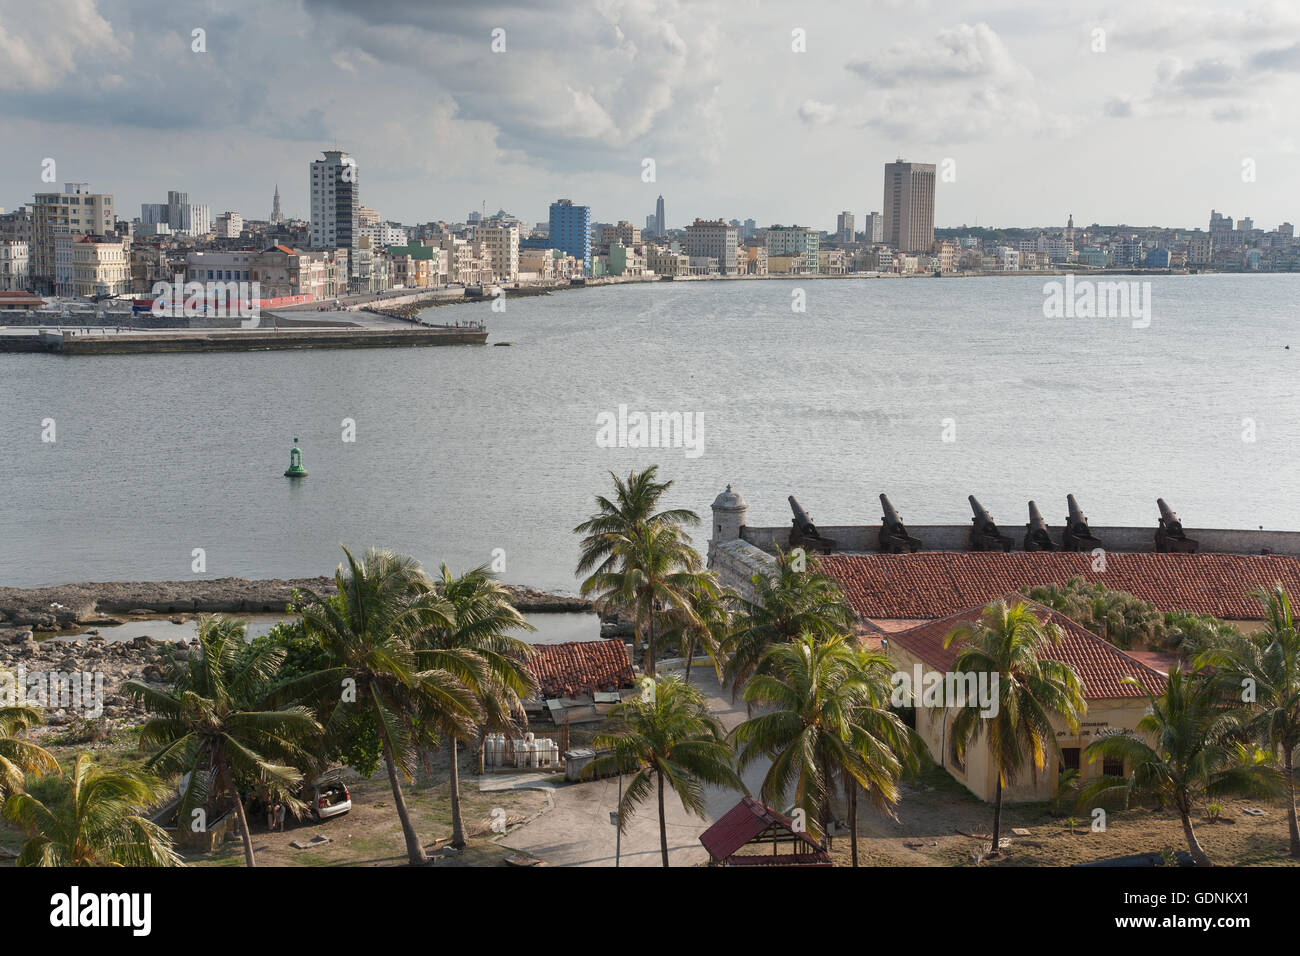 Die Festung und die Uferpromenade Malecon beiderseits des Eingangs zum Hafen von Havanna, Kuba Stockfoto